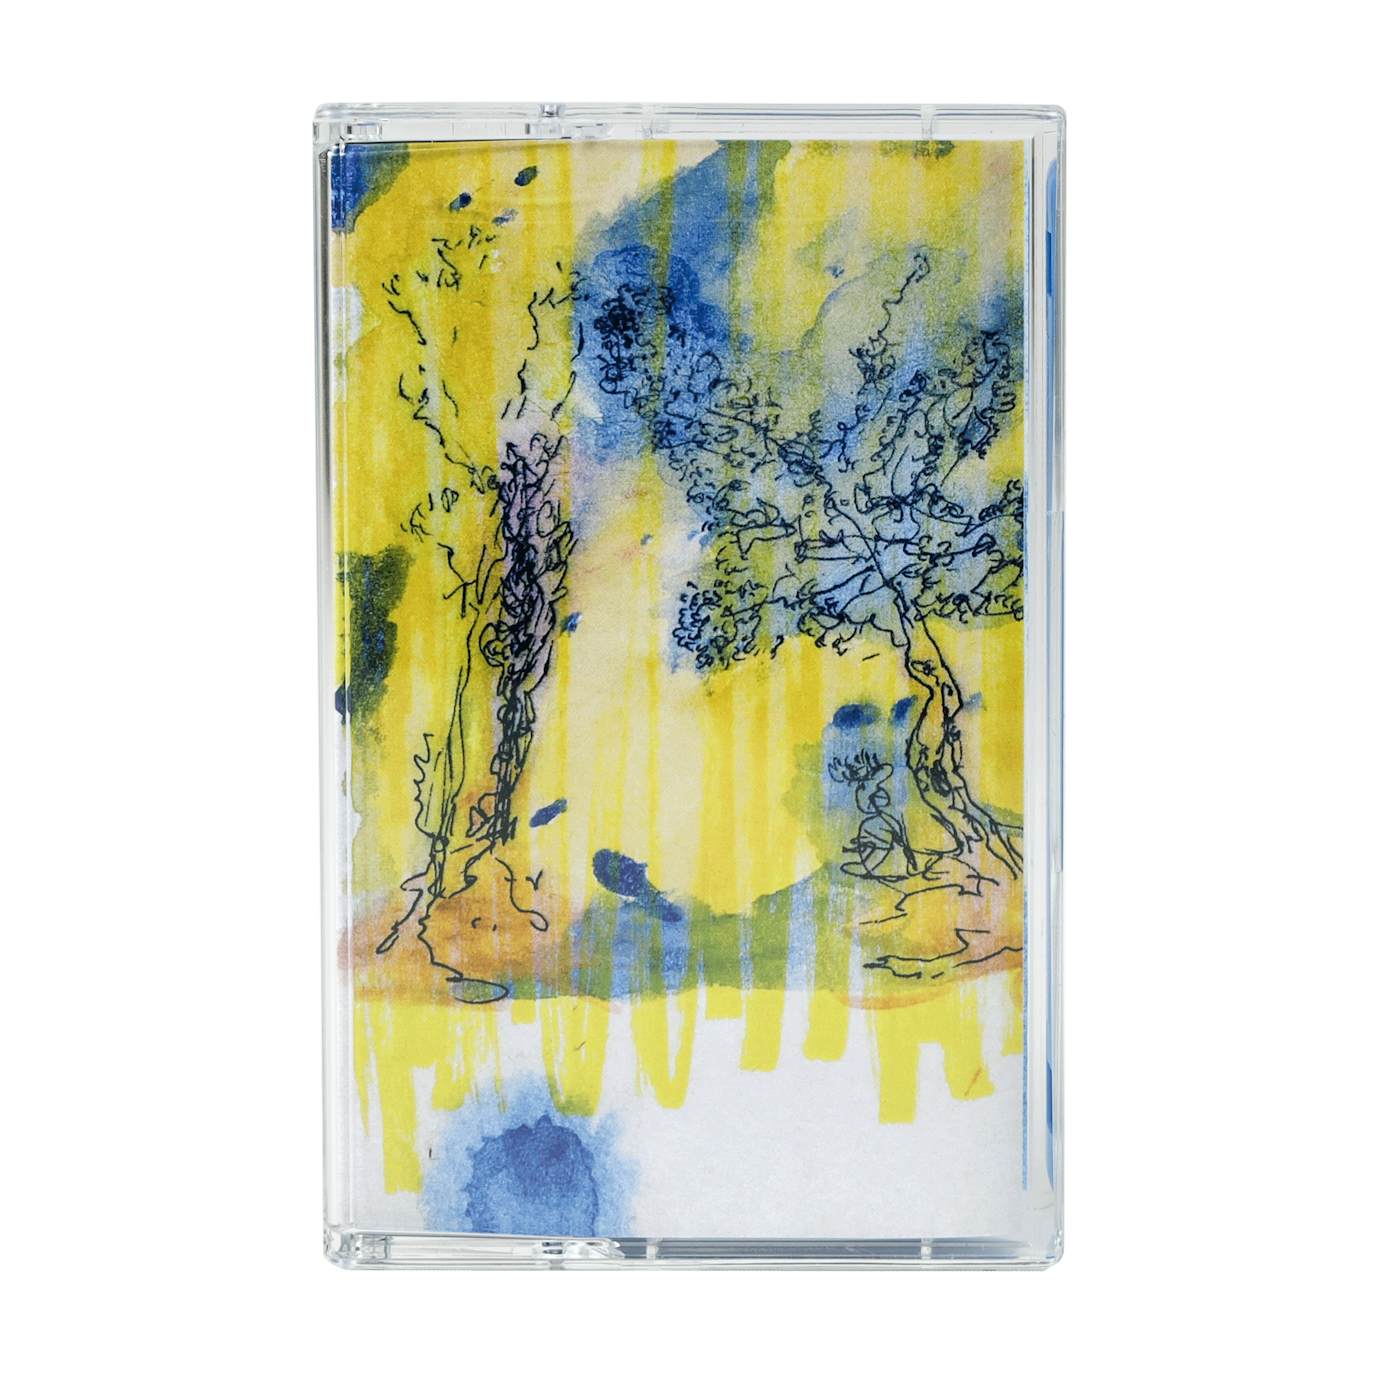 Nick Murphy | Cassette #2 (350 Made)